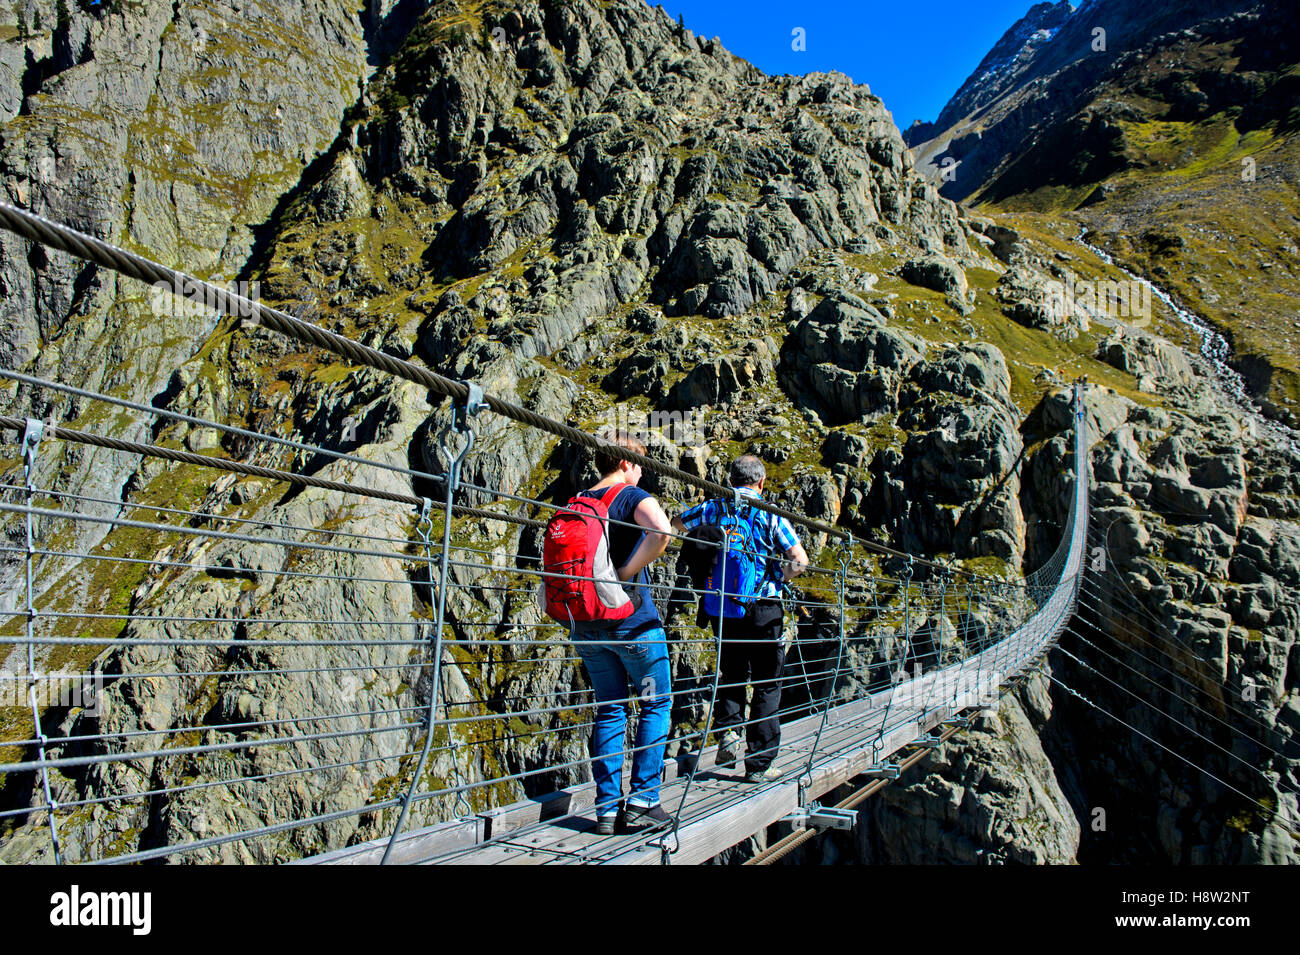 Trift Brücke, die längste Fußgängerzone Hängebrücke Trift Schlucht, Gadmer Tal, Gadmen, Schweizer Alpen, Kanton Bern Stockfoto